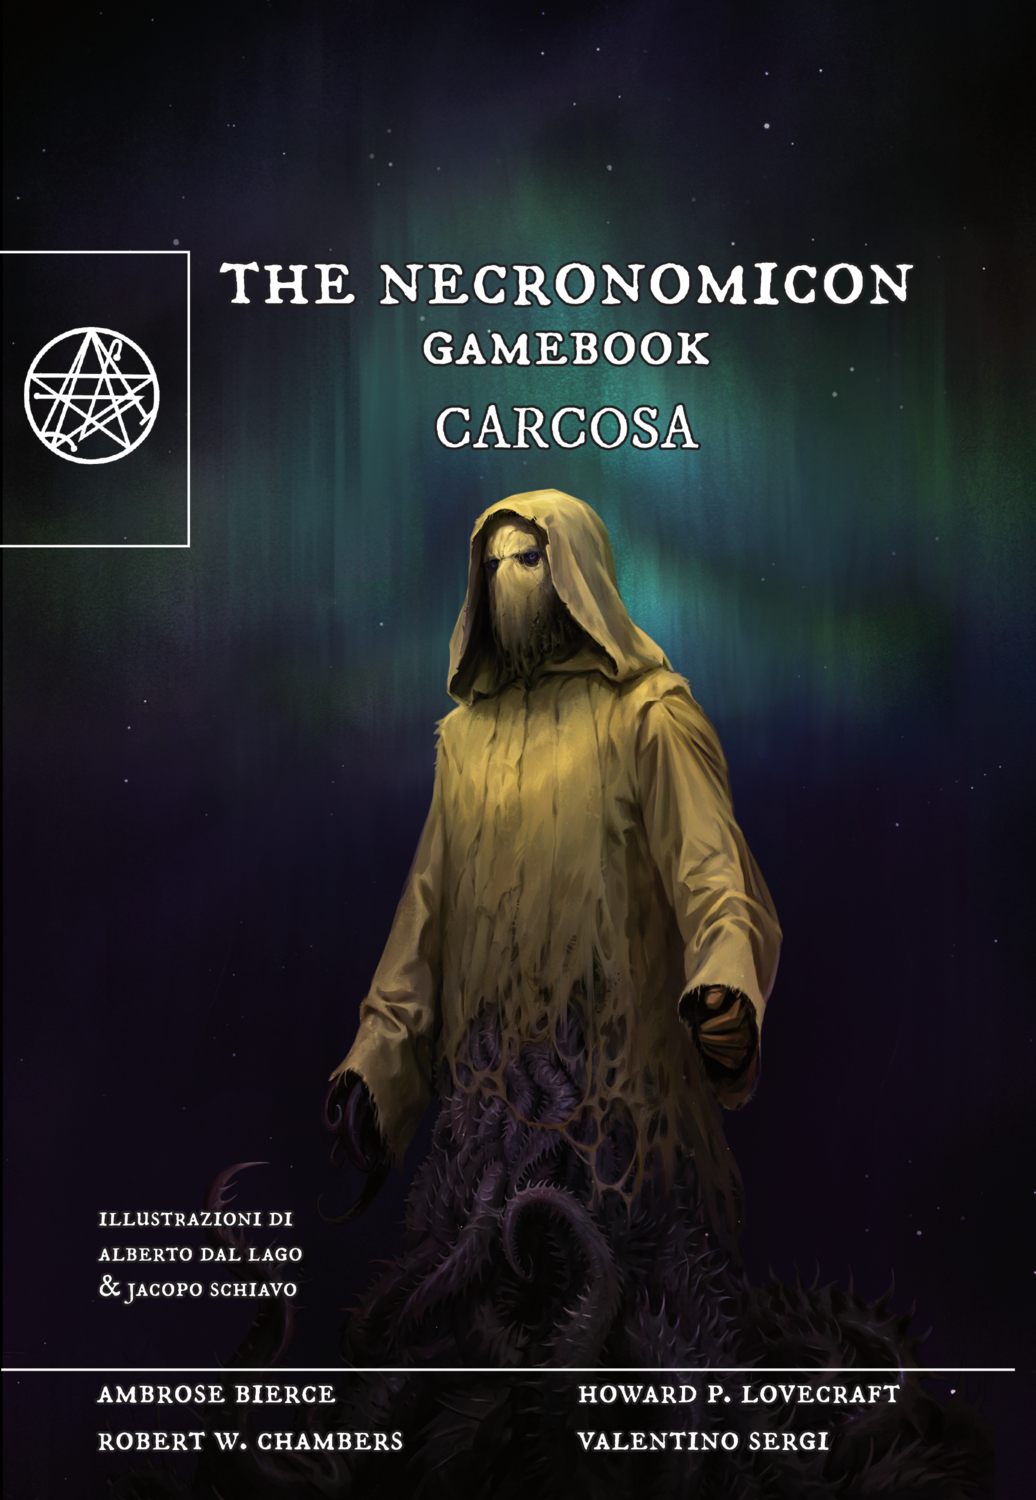 THE NECRONOMICON GAMEBOOK - CARCOSA